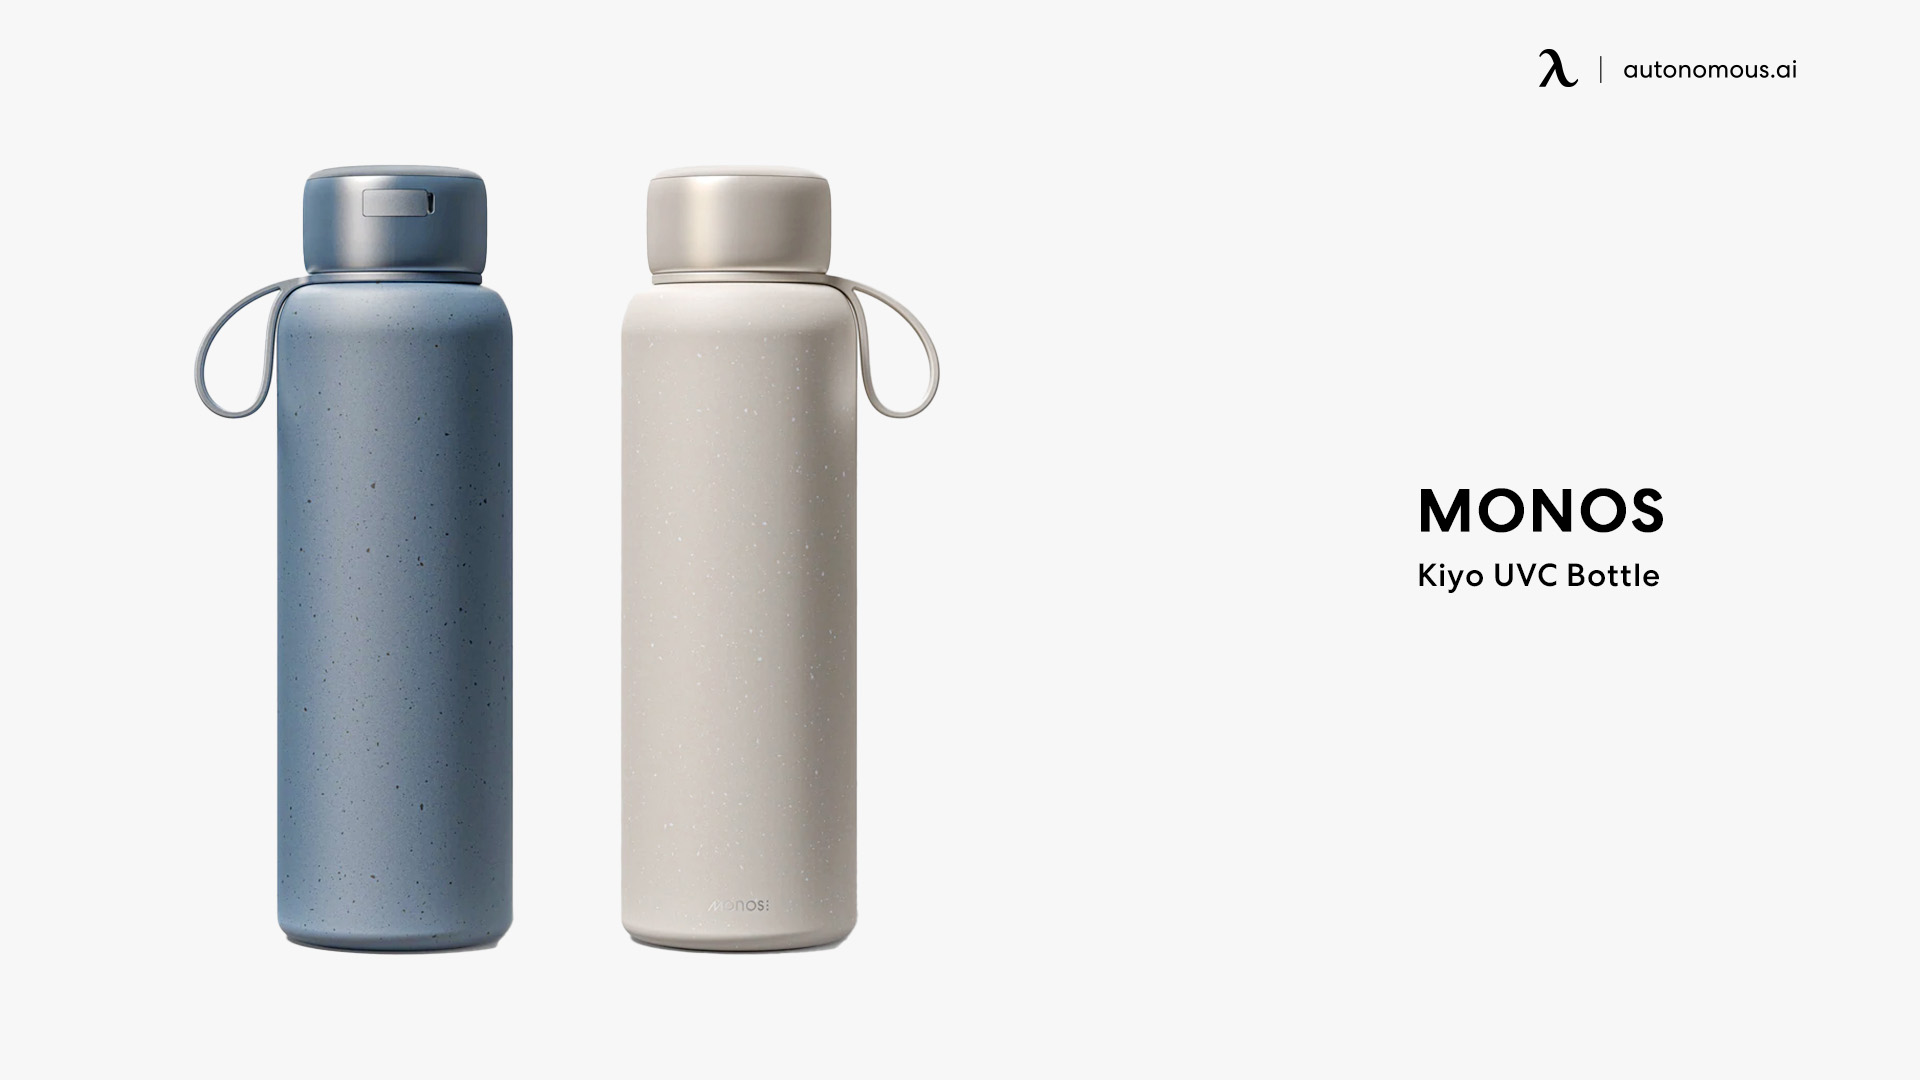 Monos Kiyo UVC Bottle self-cleaning water bottle